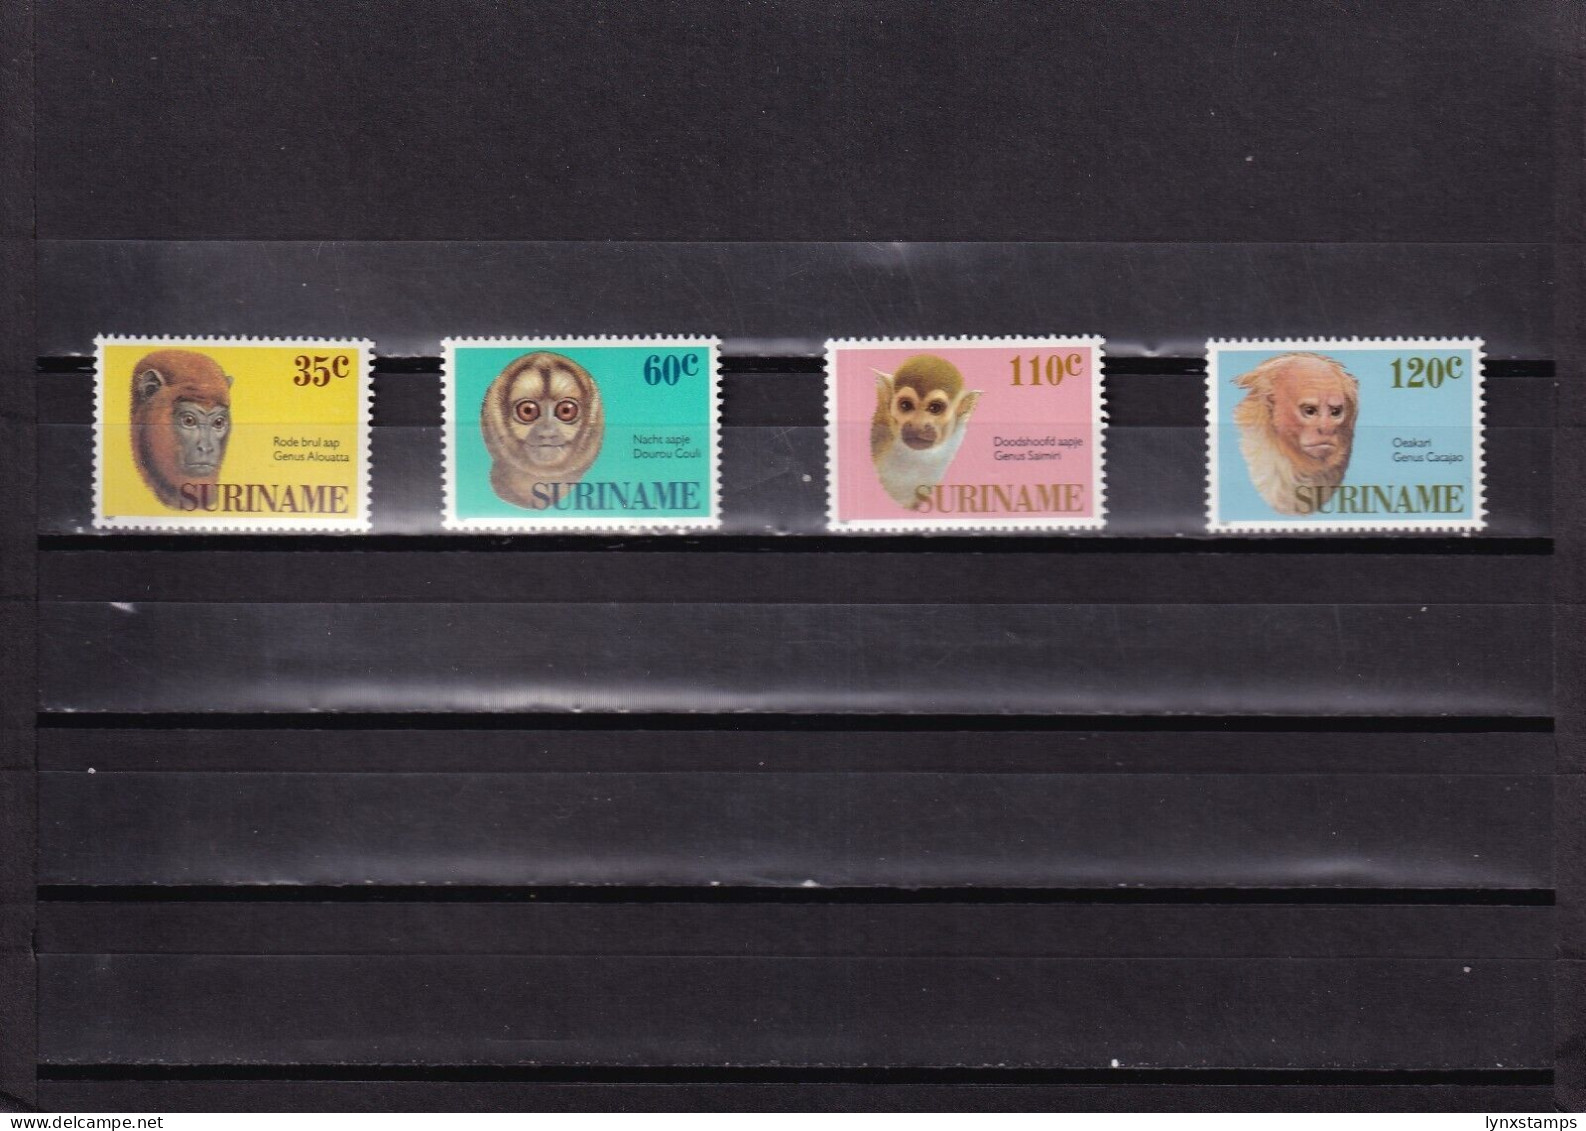 ER03 Suriname 1987 Monkeys MNH Stamps - Apen